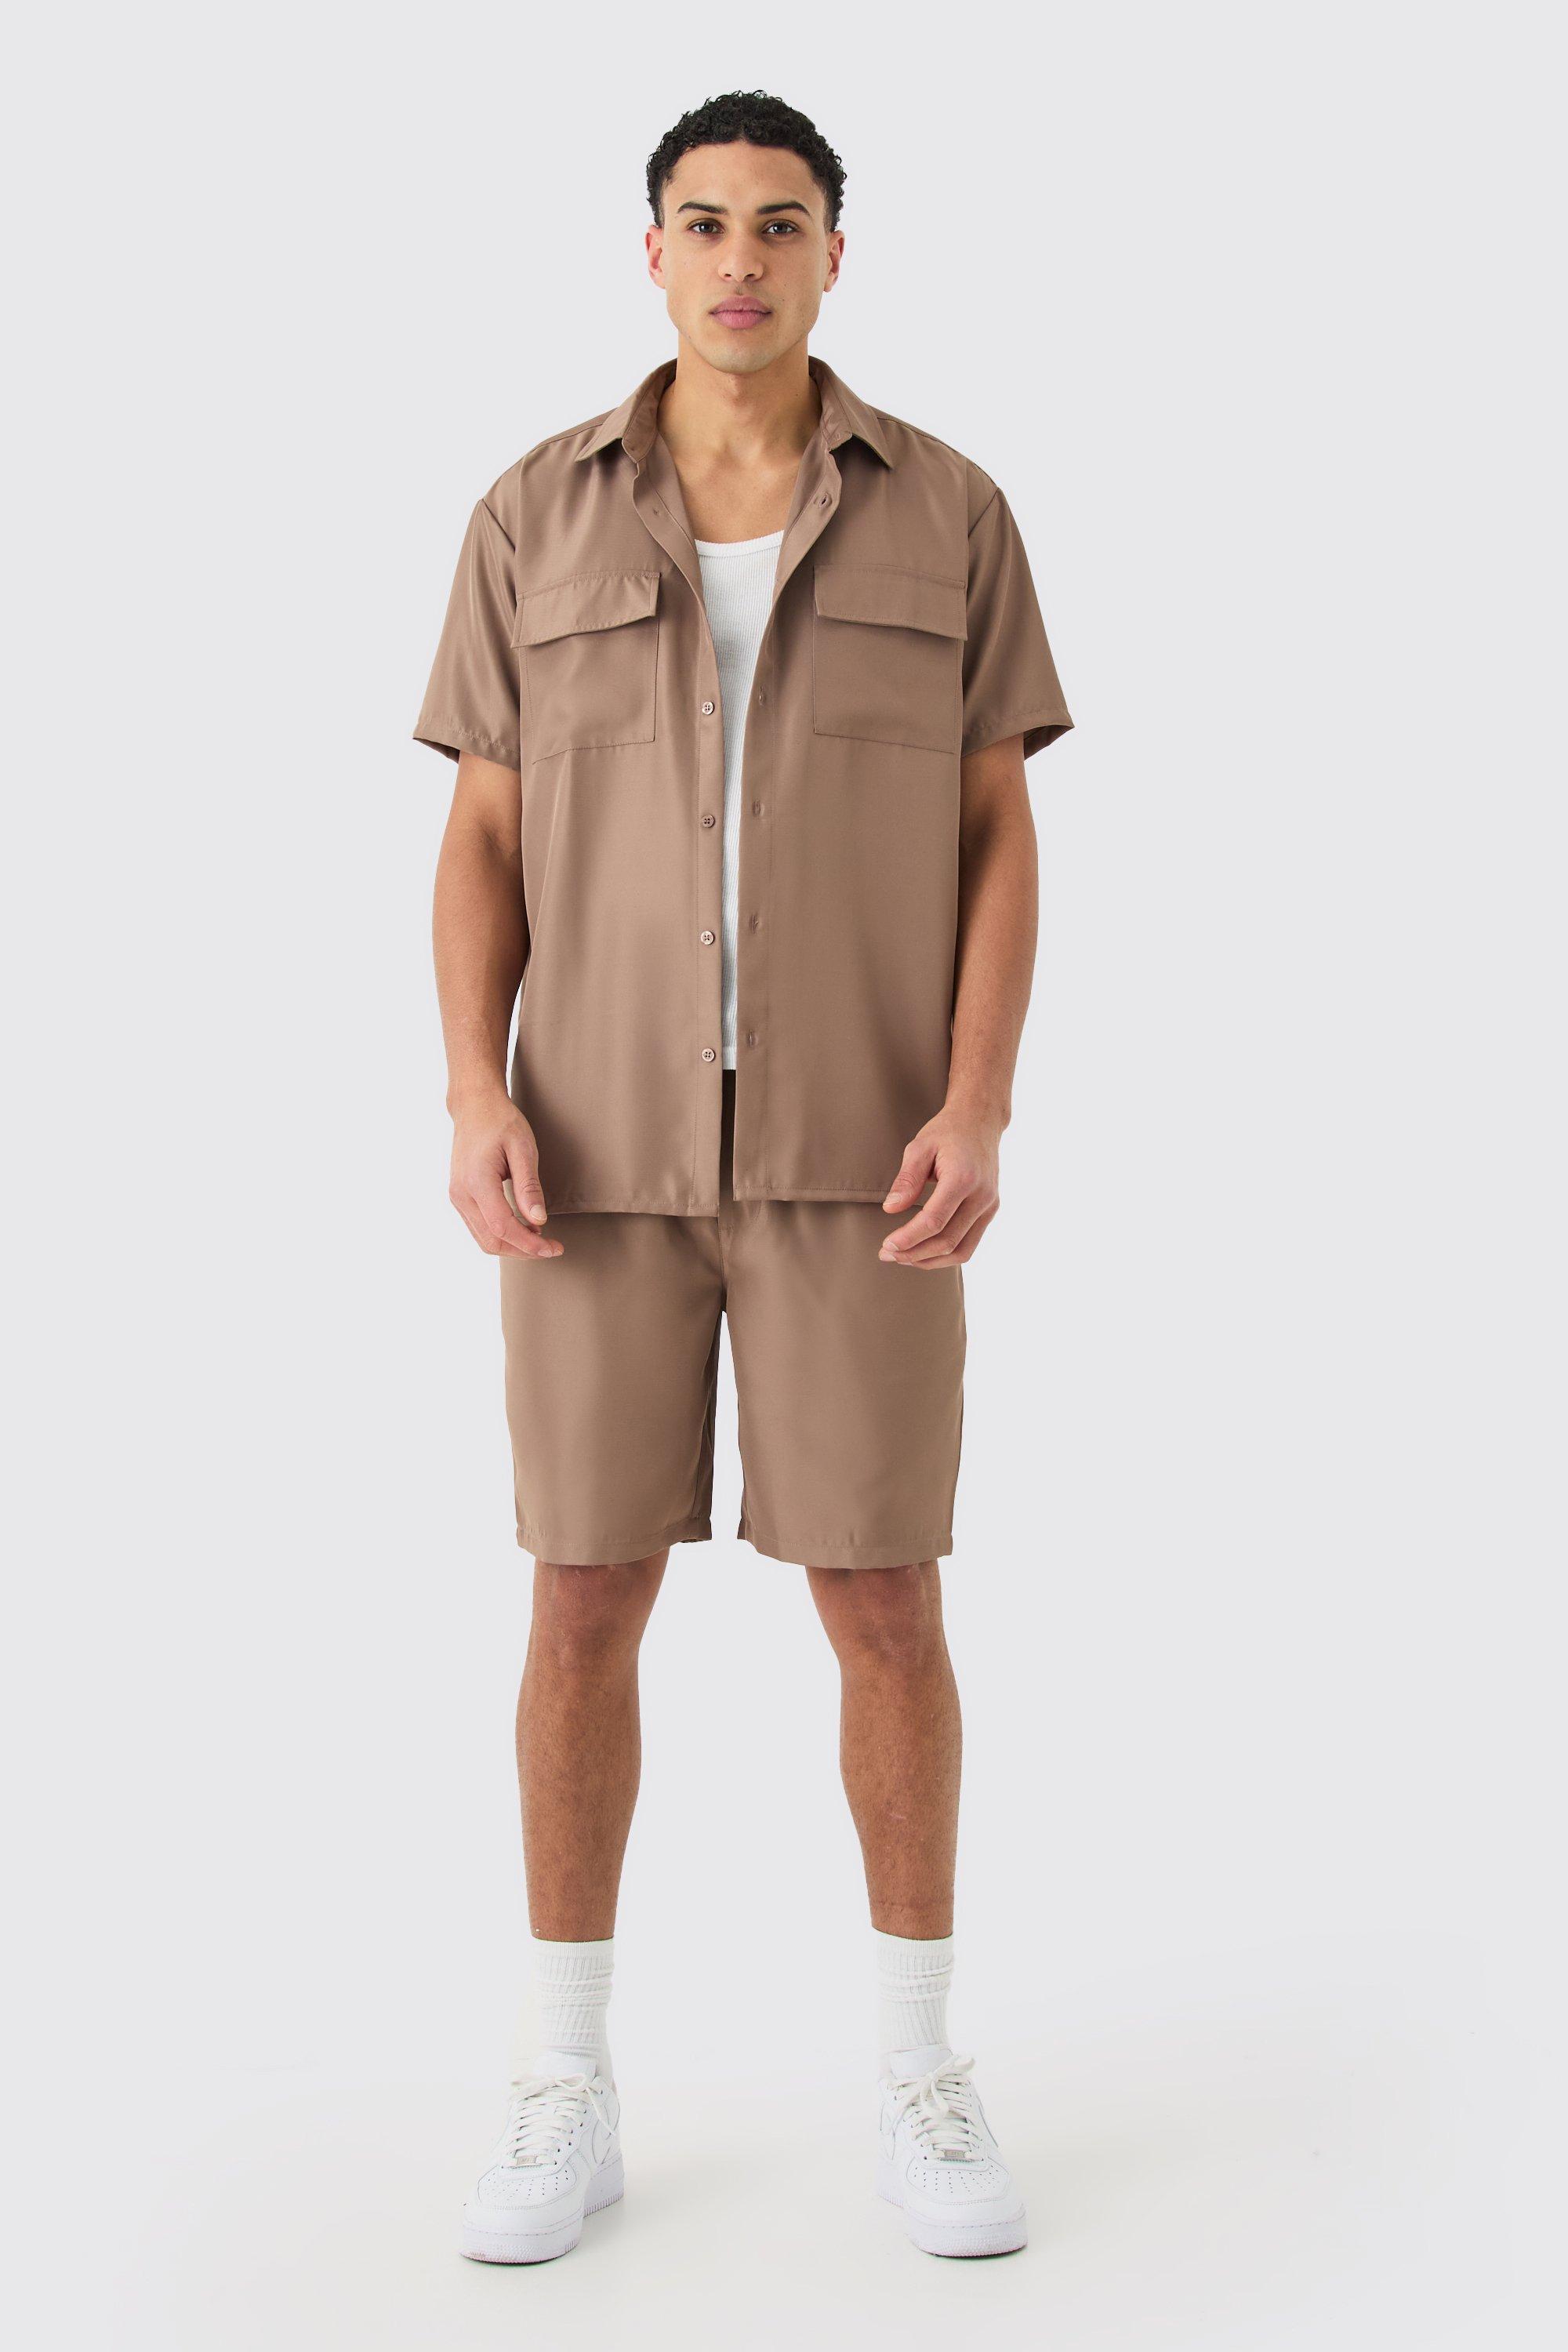 Image of Short Sleeve Soft Twill Overshirt And Short Set, Beige